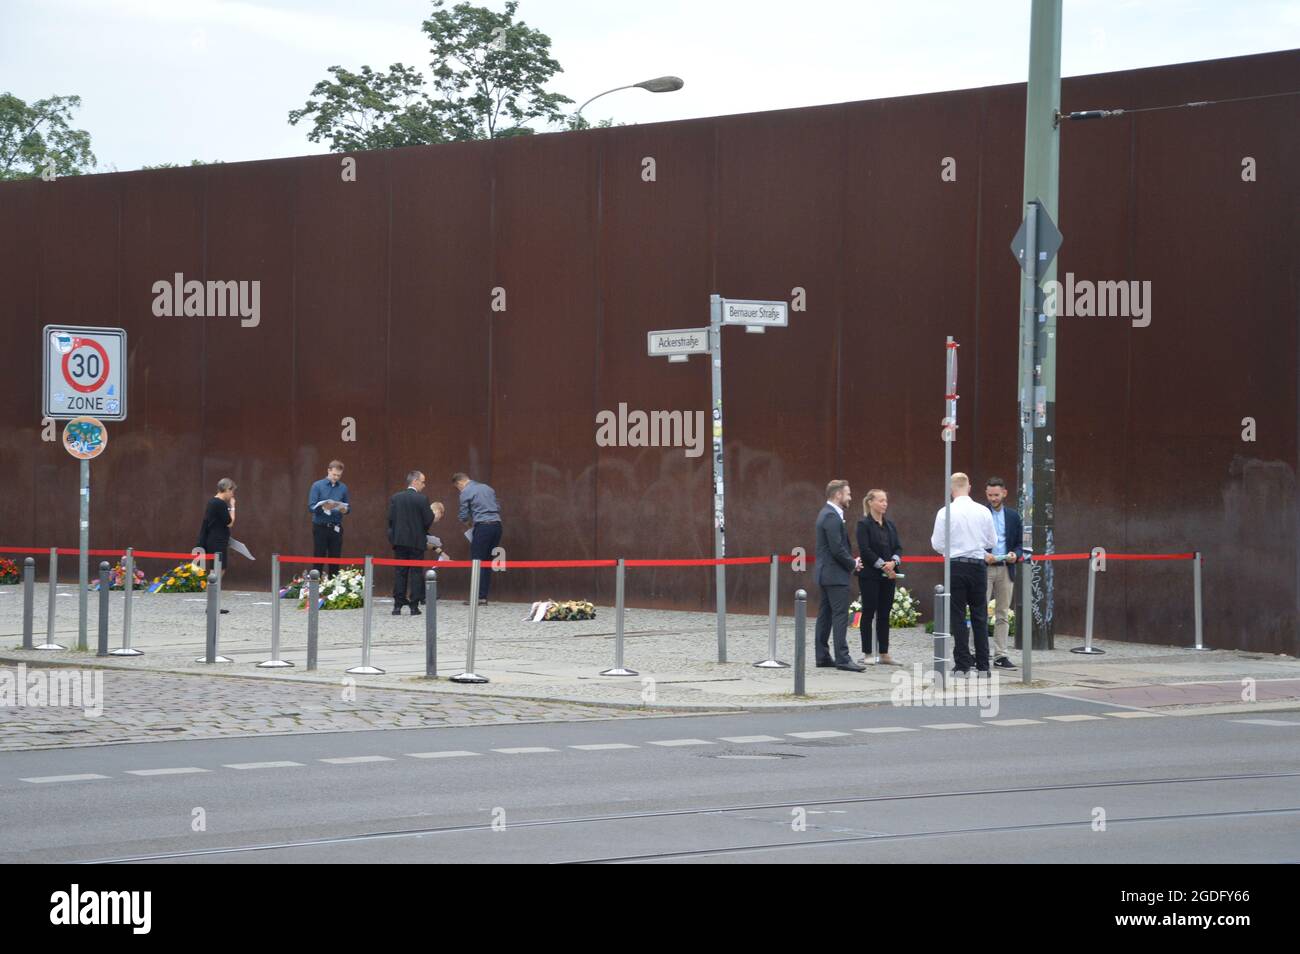 60e anniversaire de la construction du mur de Berlin. La construction du mur de Berlin a commencé le 13 août 1961. Contrôles stricts de la police dans la Bernauer Strasse, près du Mémorial du mur de Berlin, avant l'événement commémoratif officiel - Berlin, Allemagne - 13 août 2021. Banque D'Images